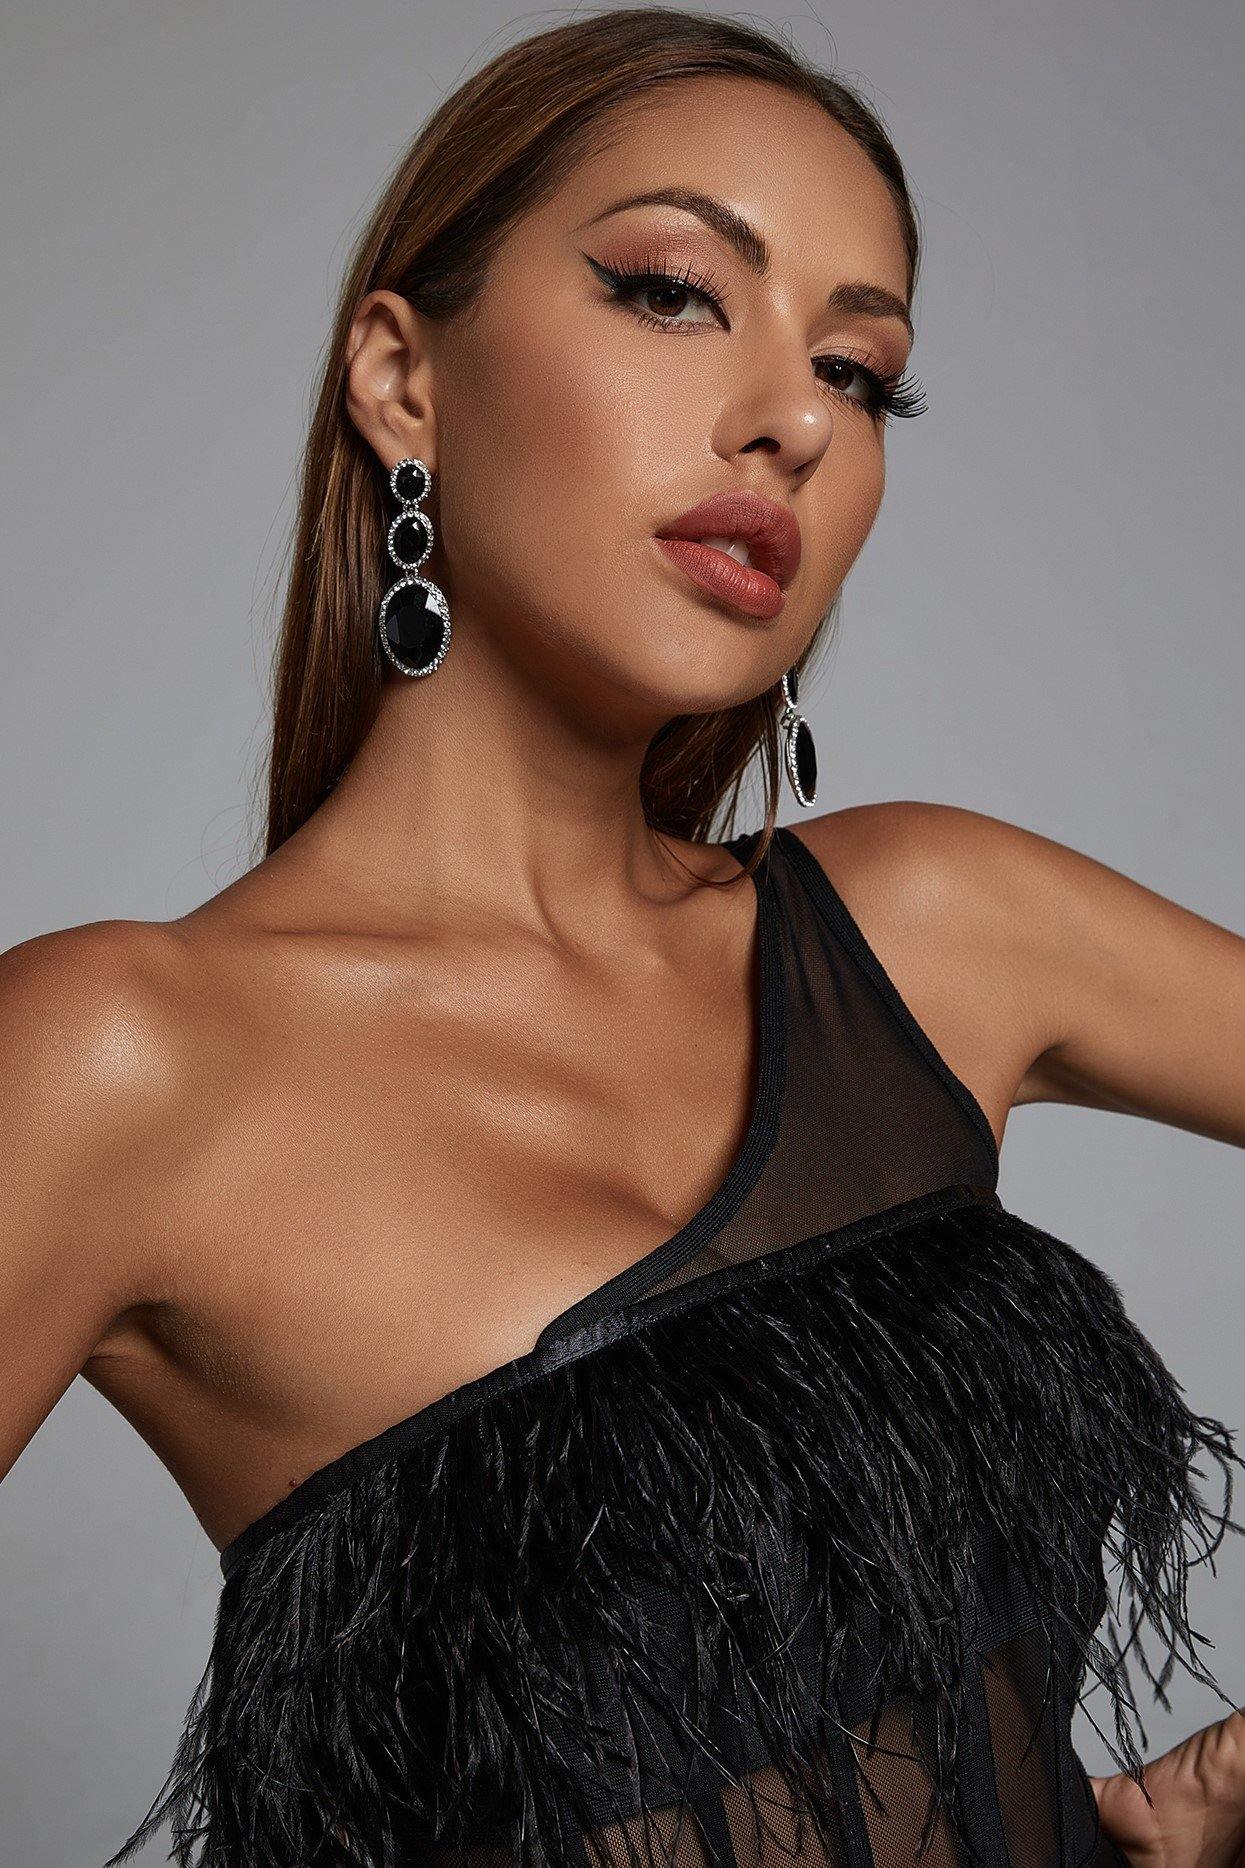 Alyna Diamante Drop Earrings - Black - Bellabarnett